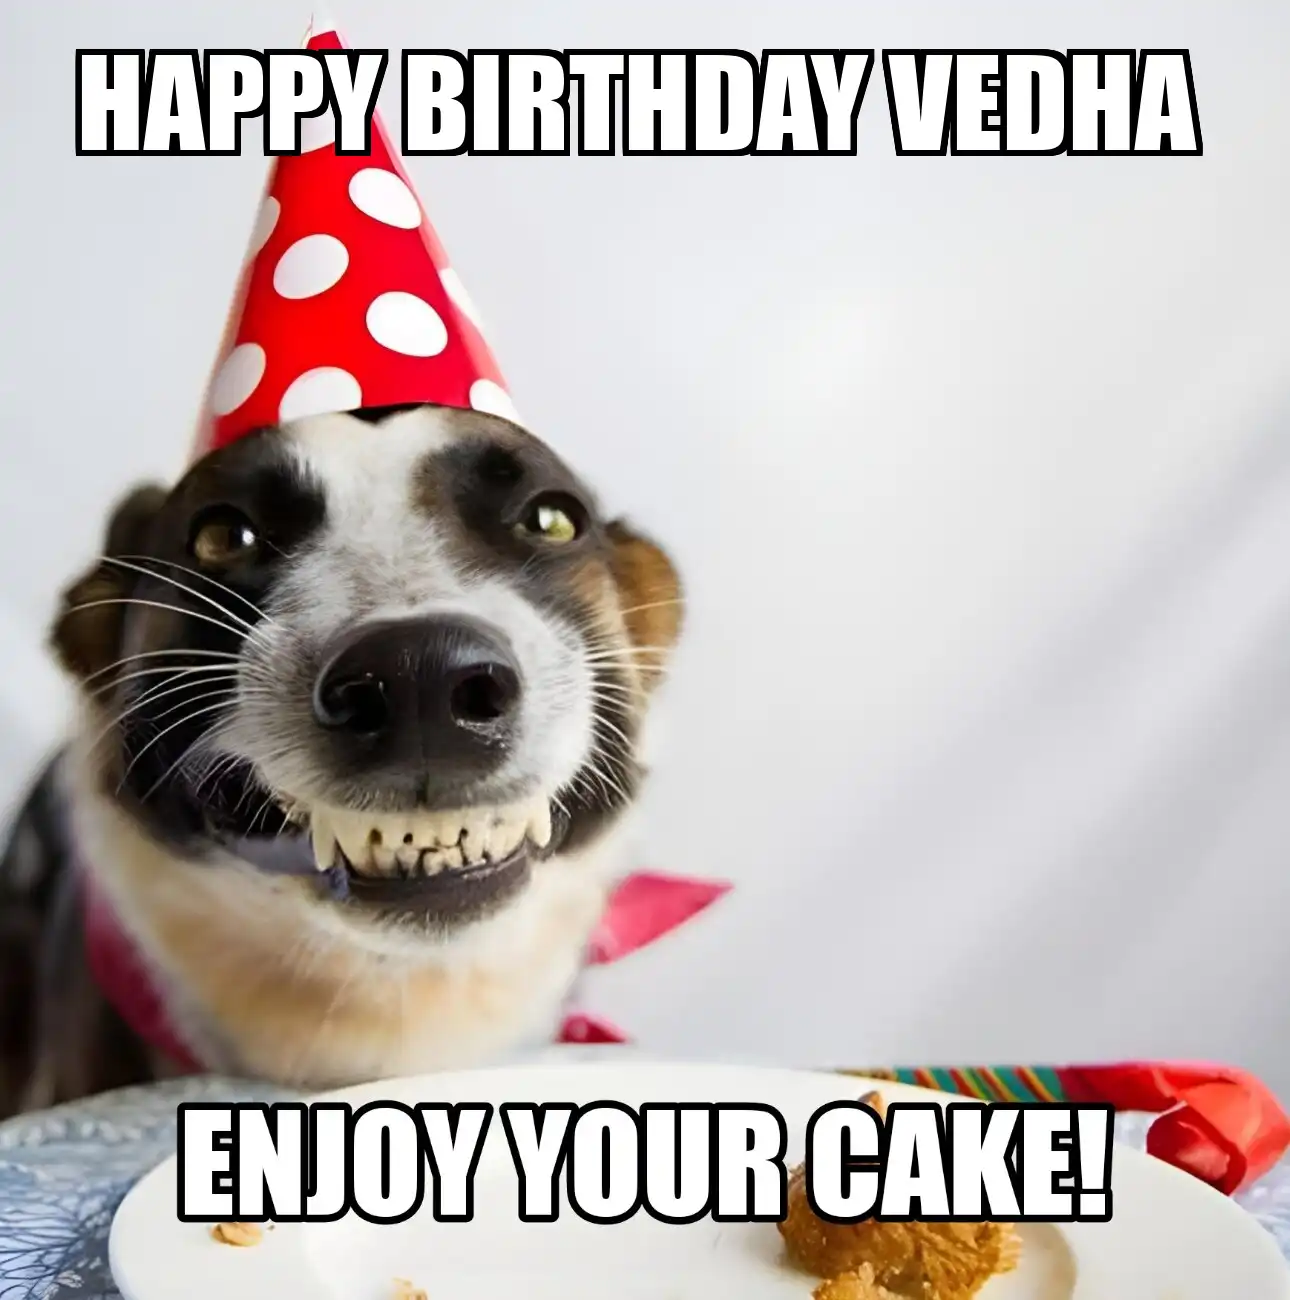 Happy Birthday Vedha Enjoy Your Cake Dog Meme